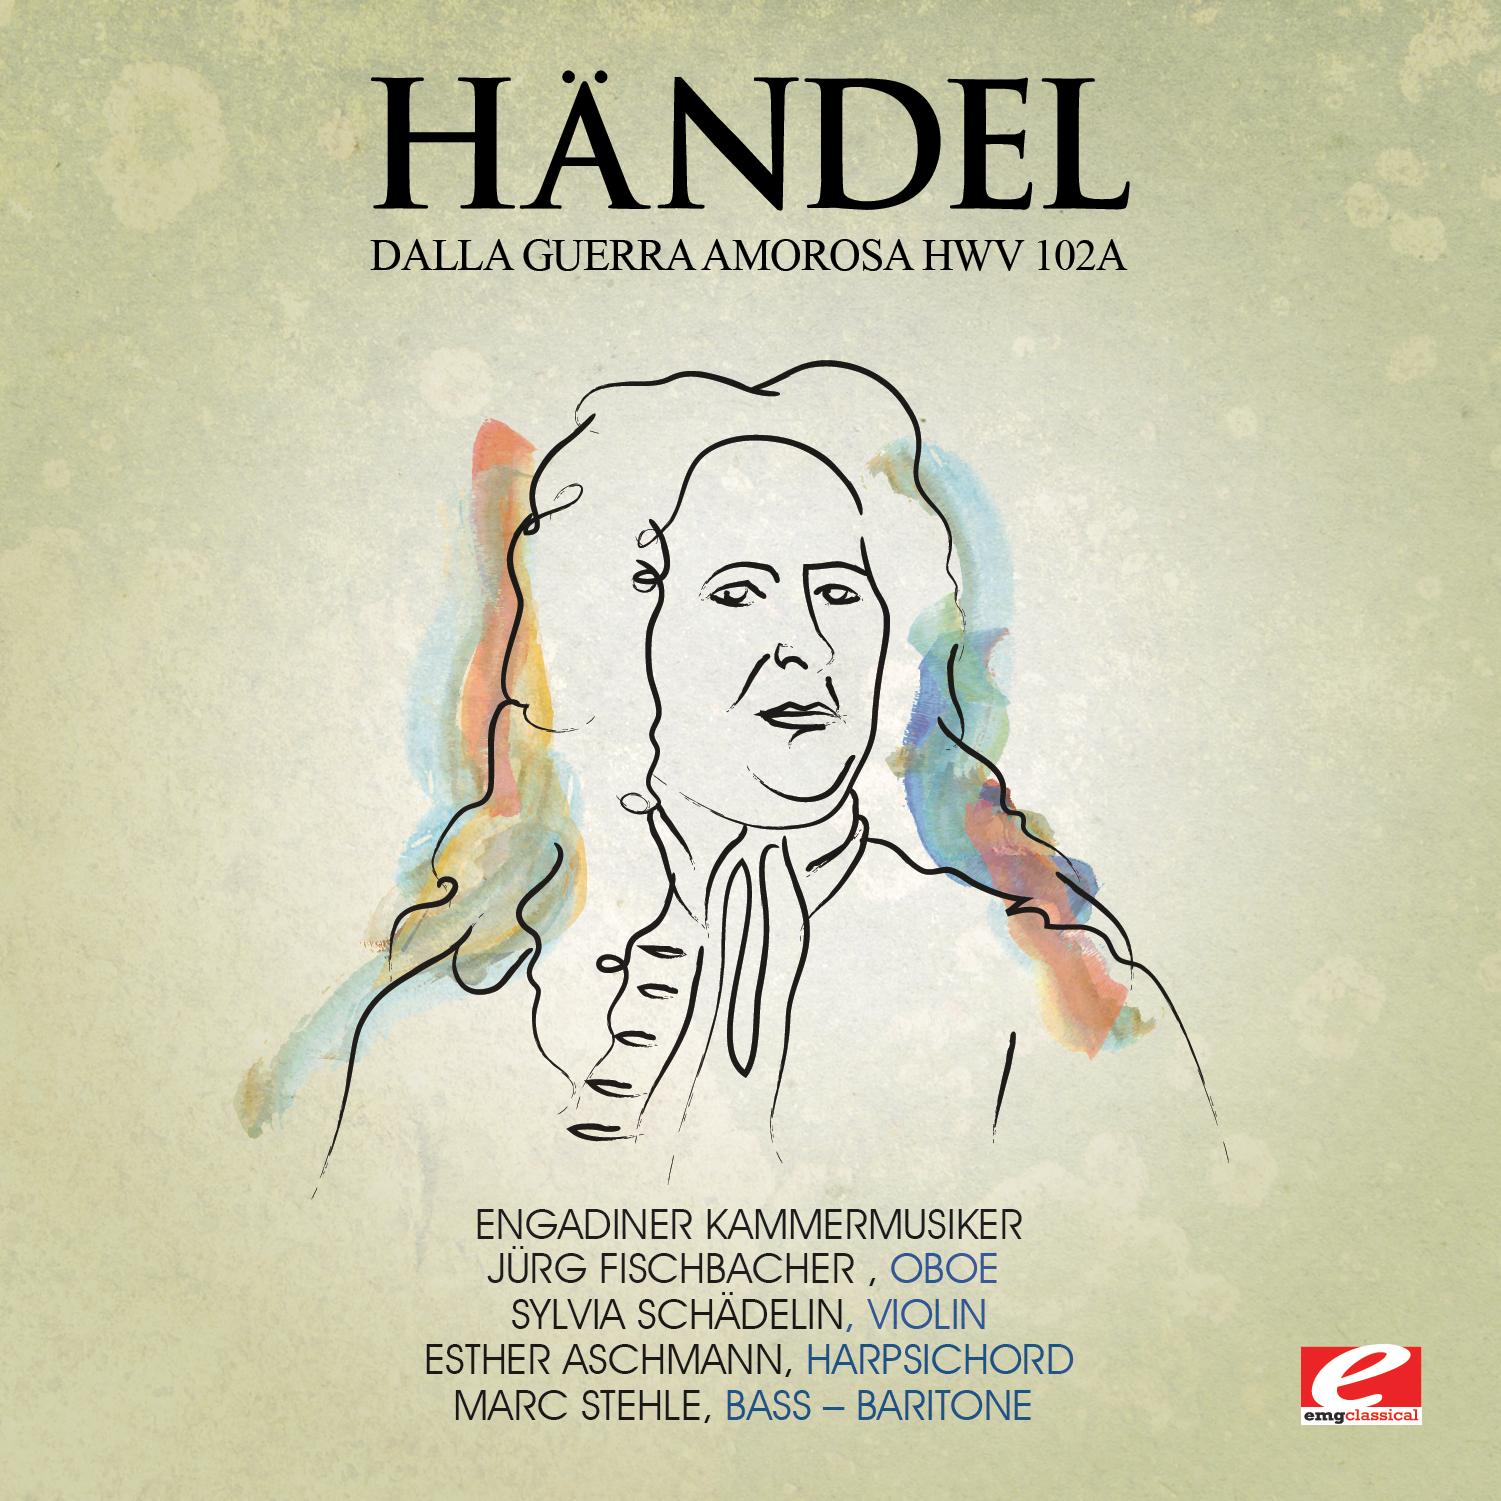 Handel: Dalla Guerra Amorosa, HMV 102a (Digitally Remastered)